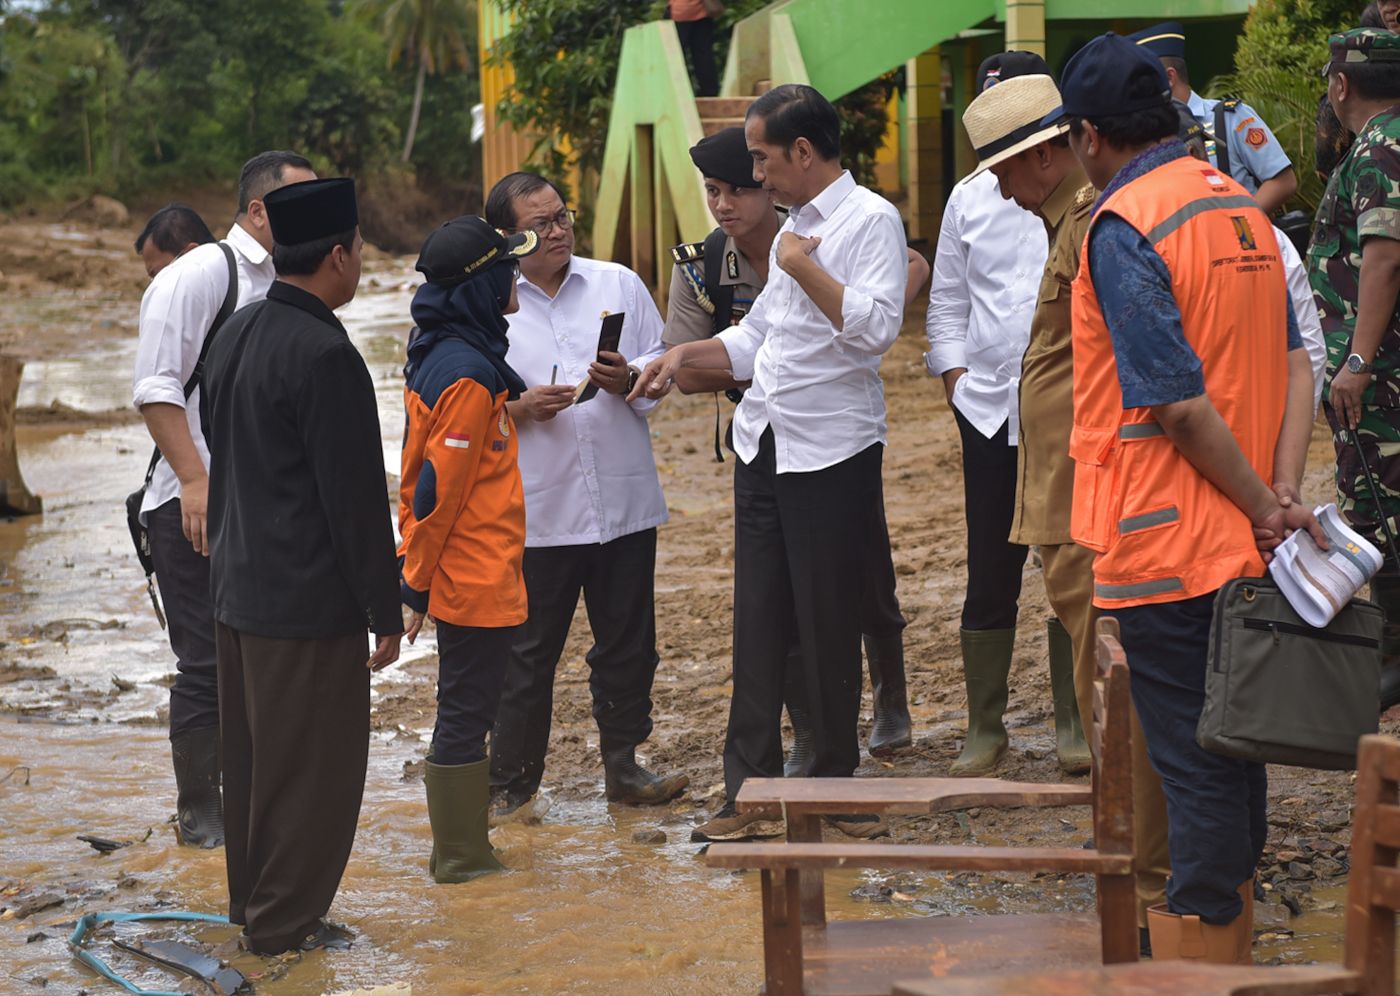 Tinjau Lokasi Bencana di Lebak, Presiden Jokowi Perintahkan Segera Perbaiki 30 Jembatan dan 19 Sekolah Rusak 